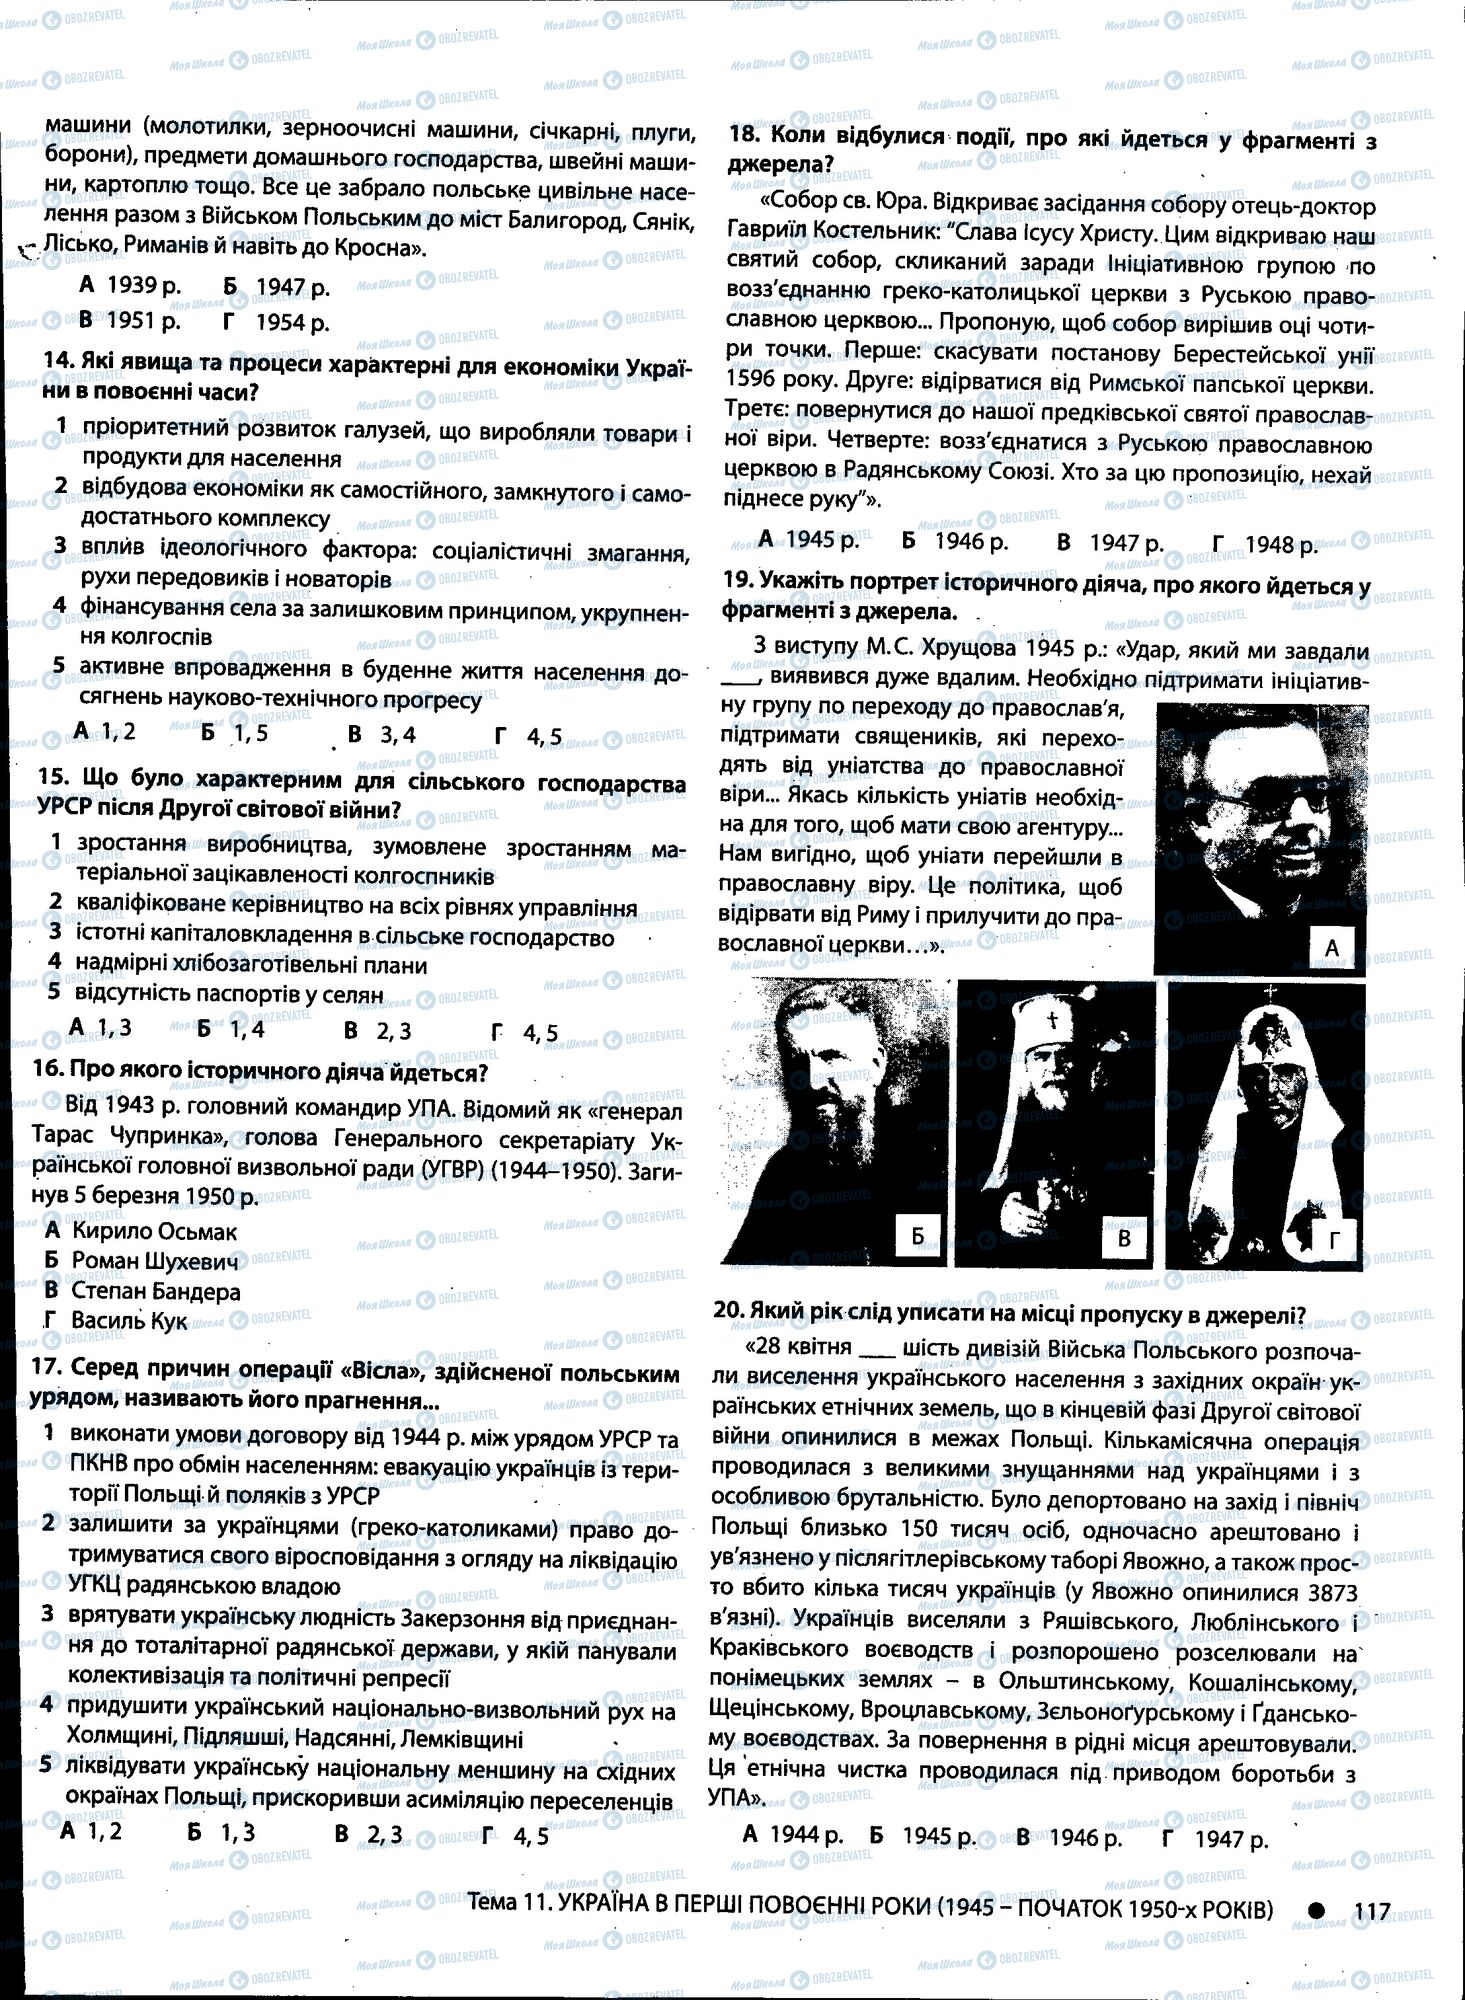 ДПА История Украины 11 класс страница 117